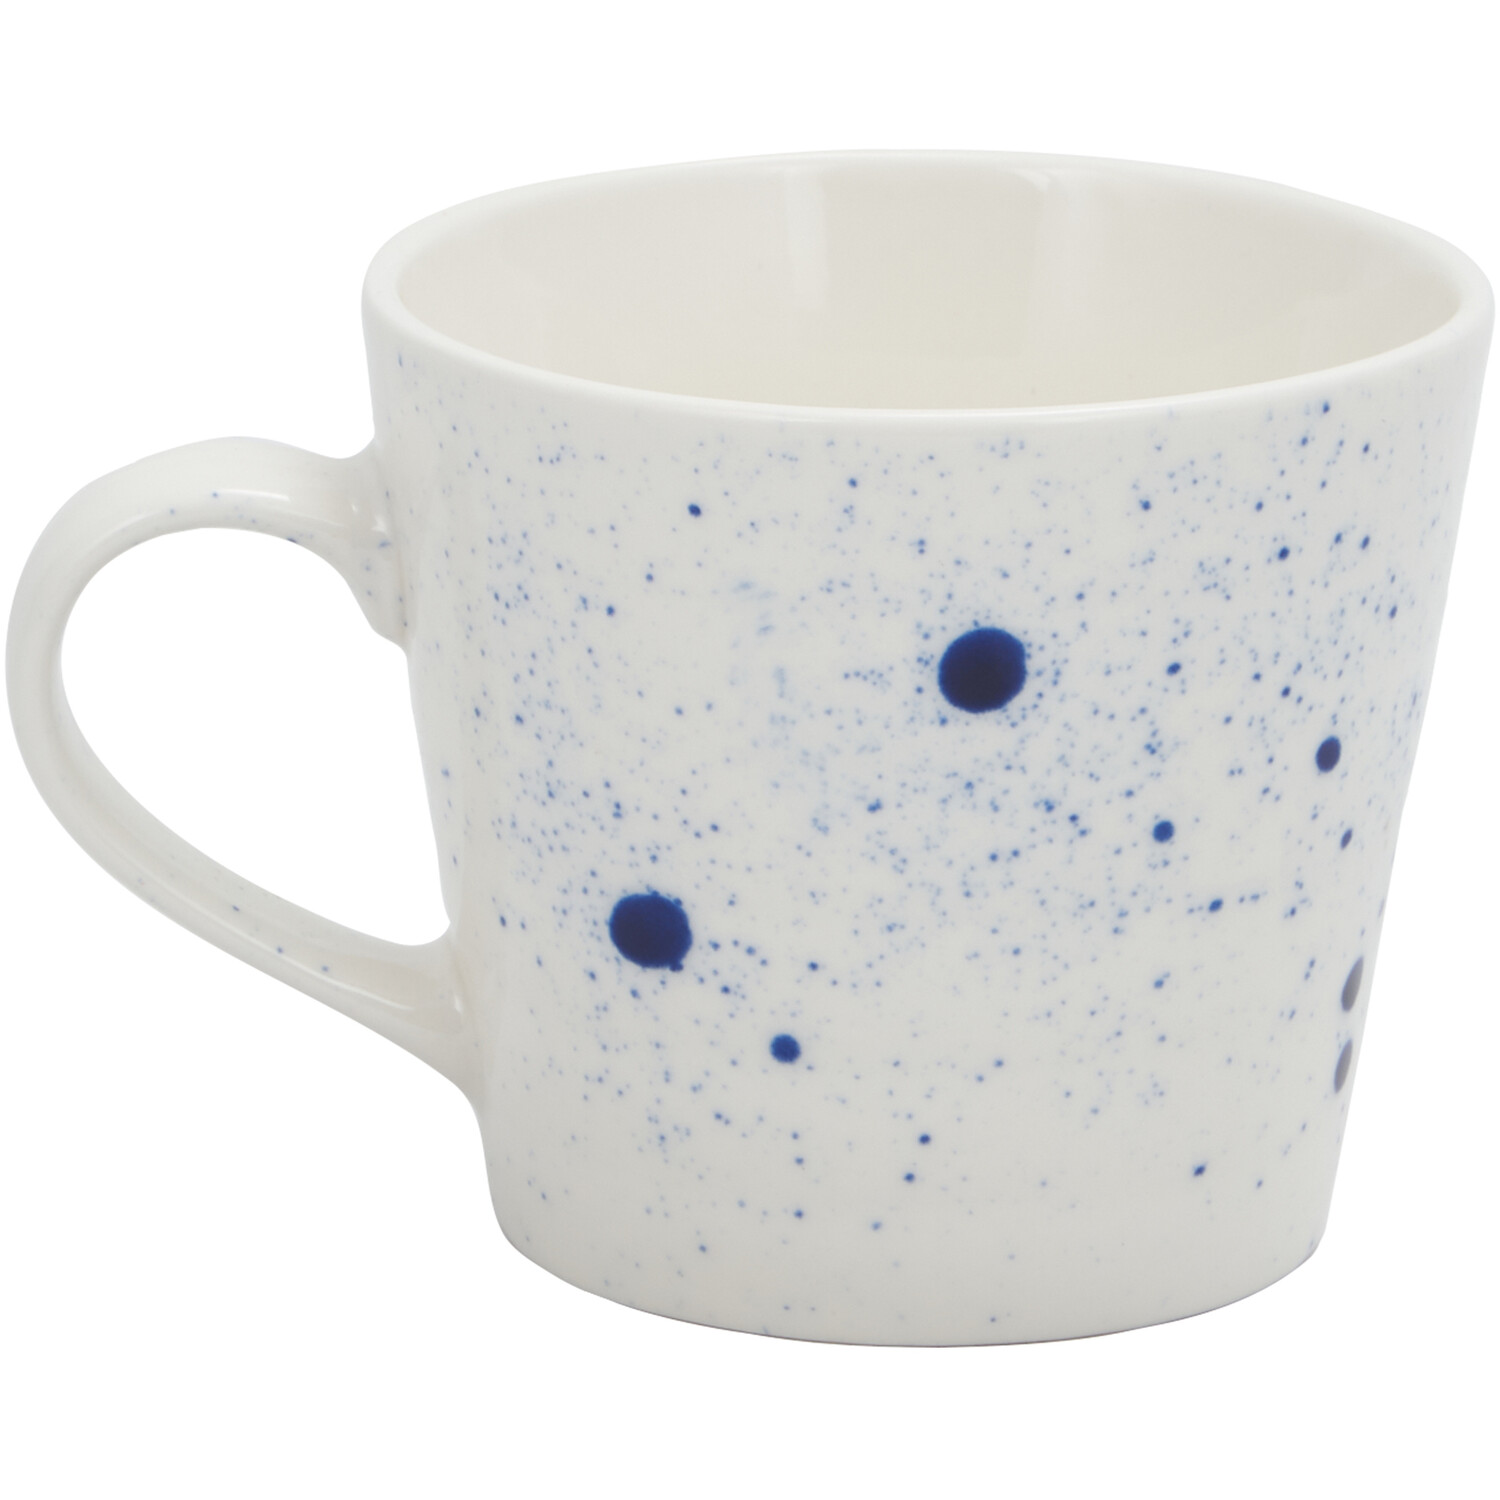 Blue Splatter Mug - White Image 1